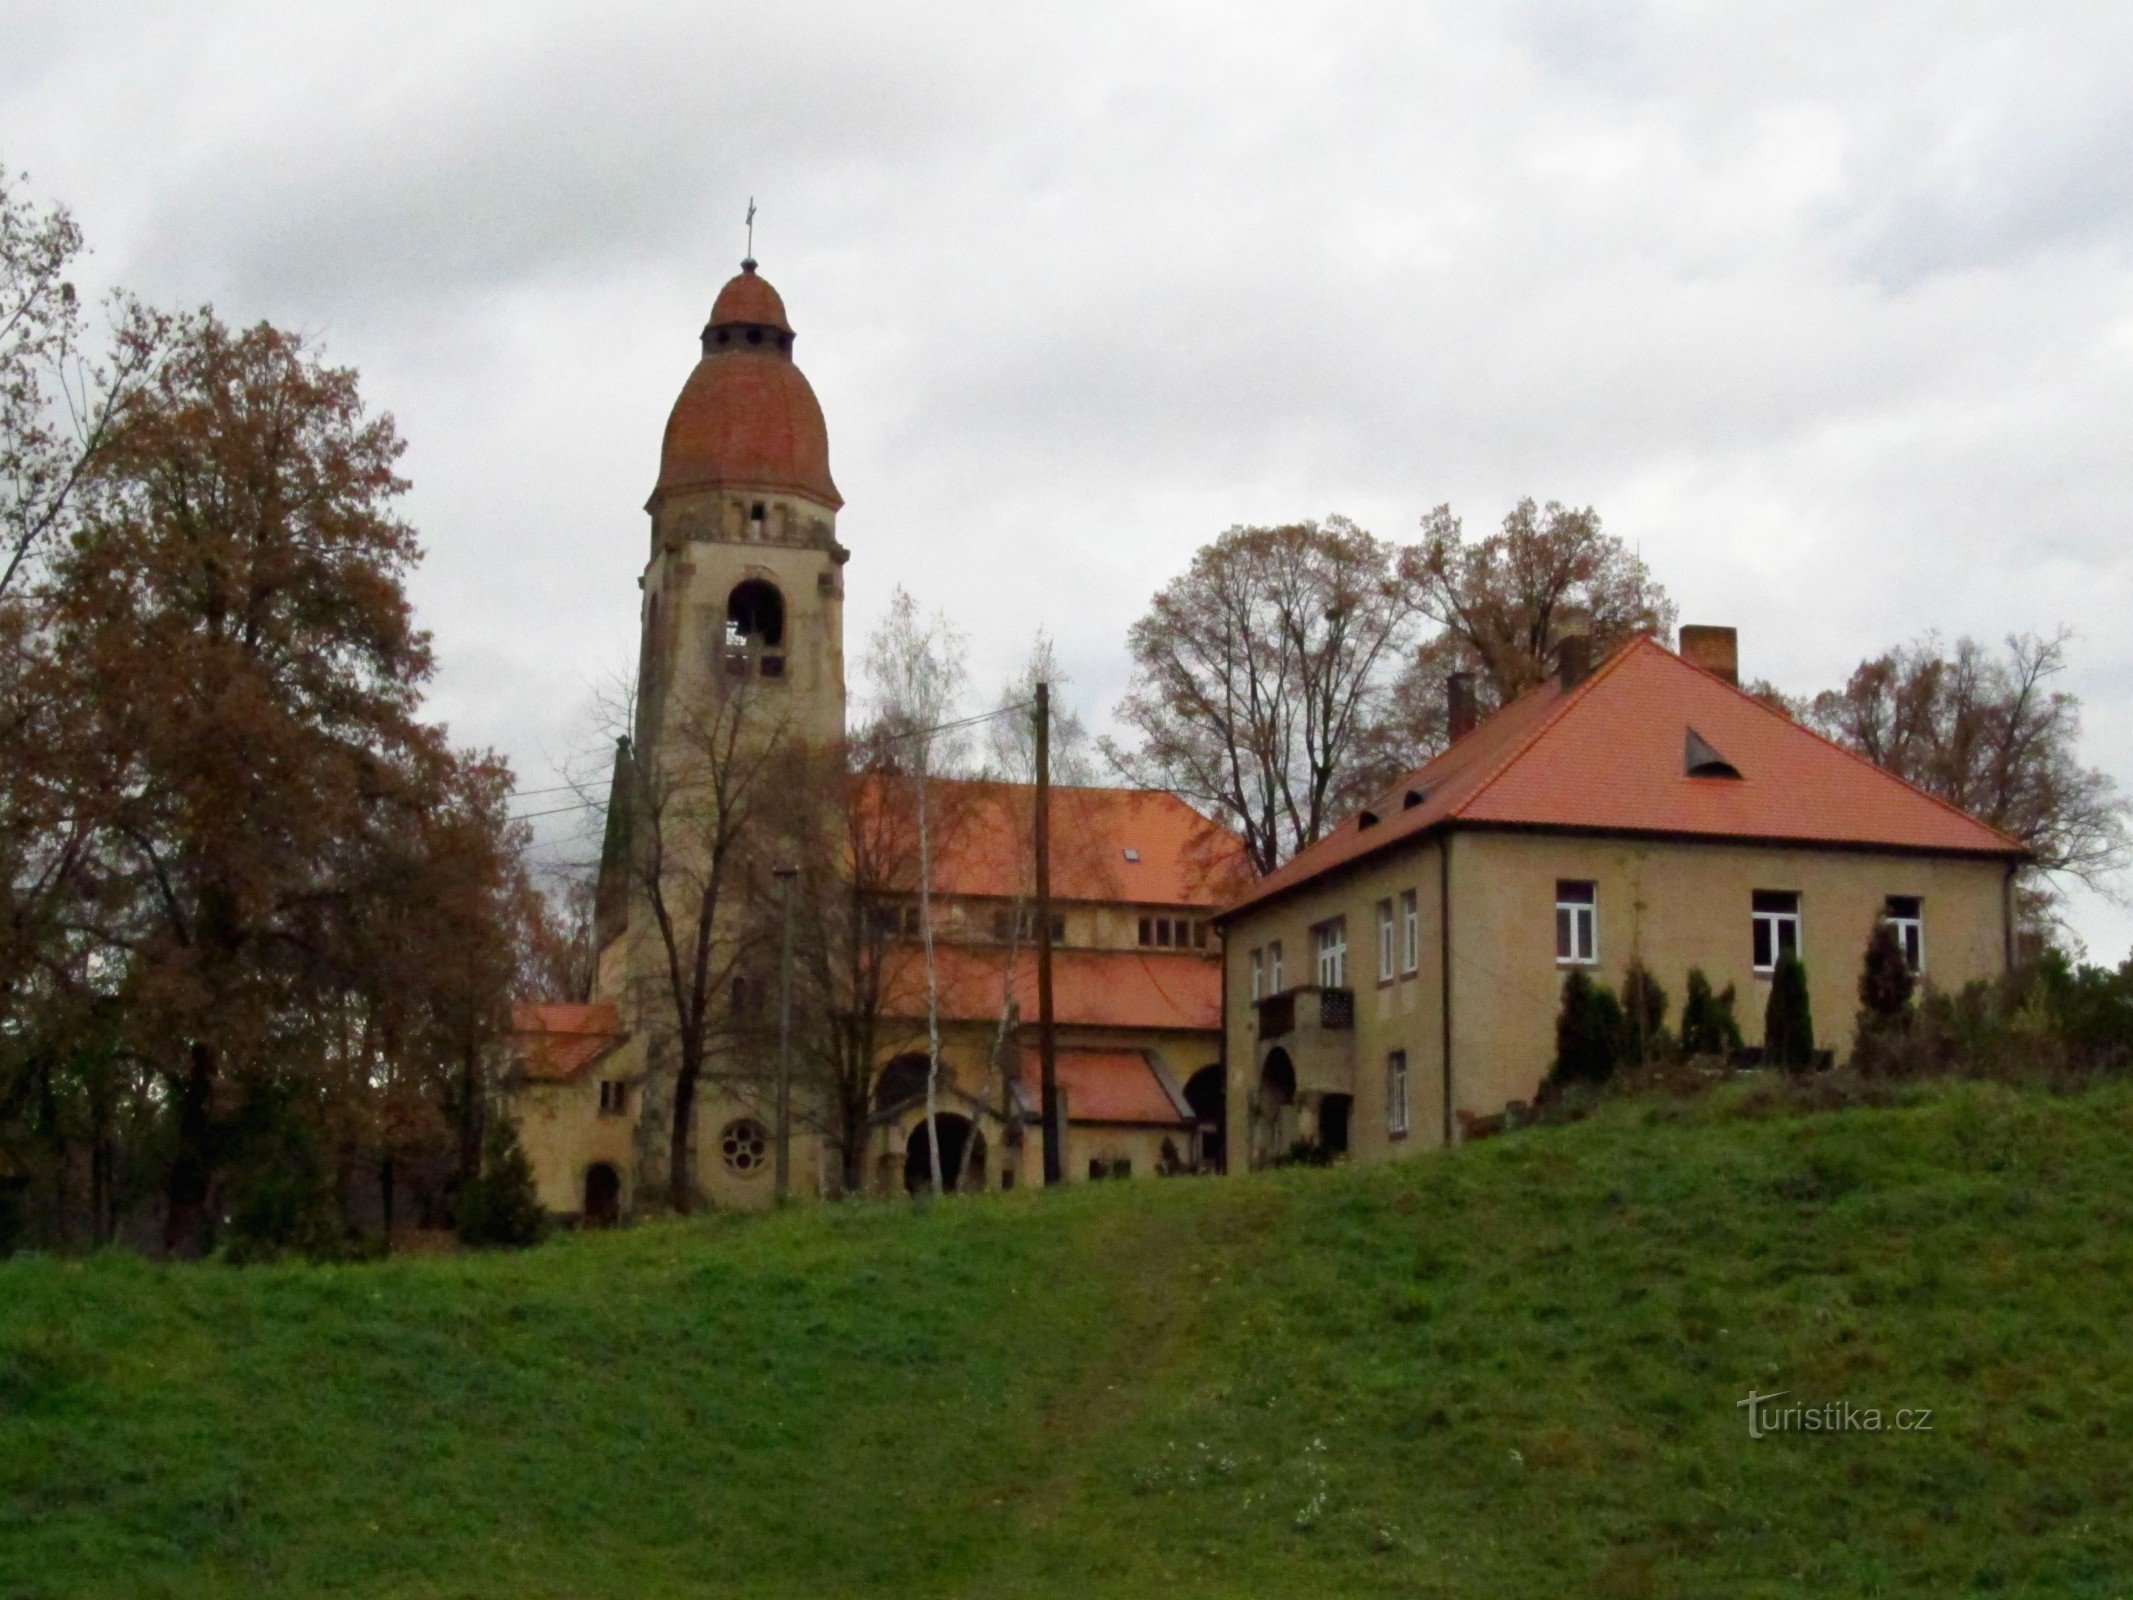 01 Štěchovice, nhà thờ Thánh John of Nepomuck và nhà xứ